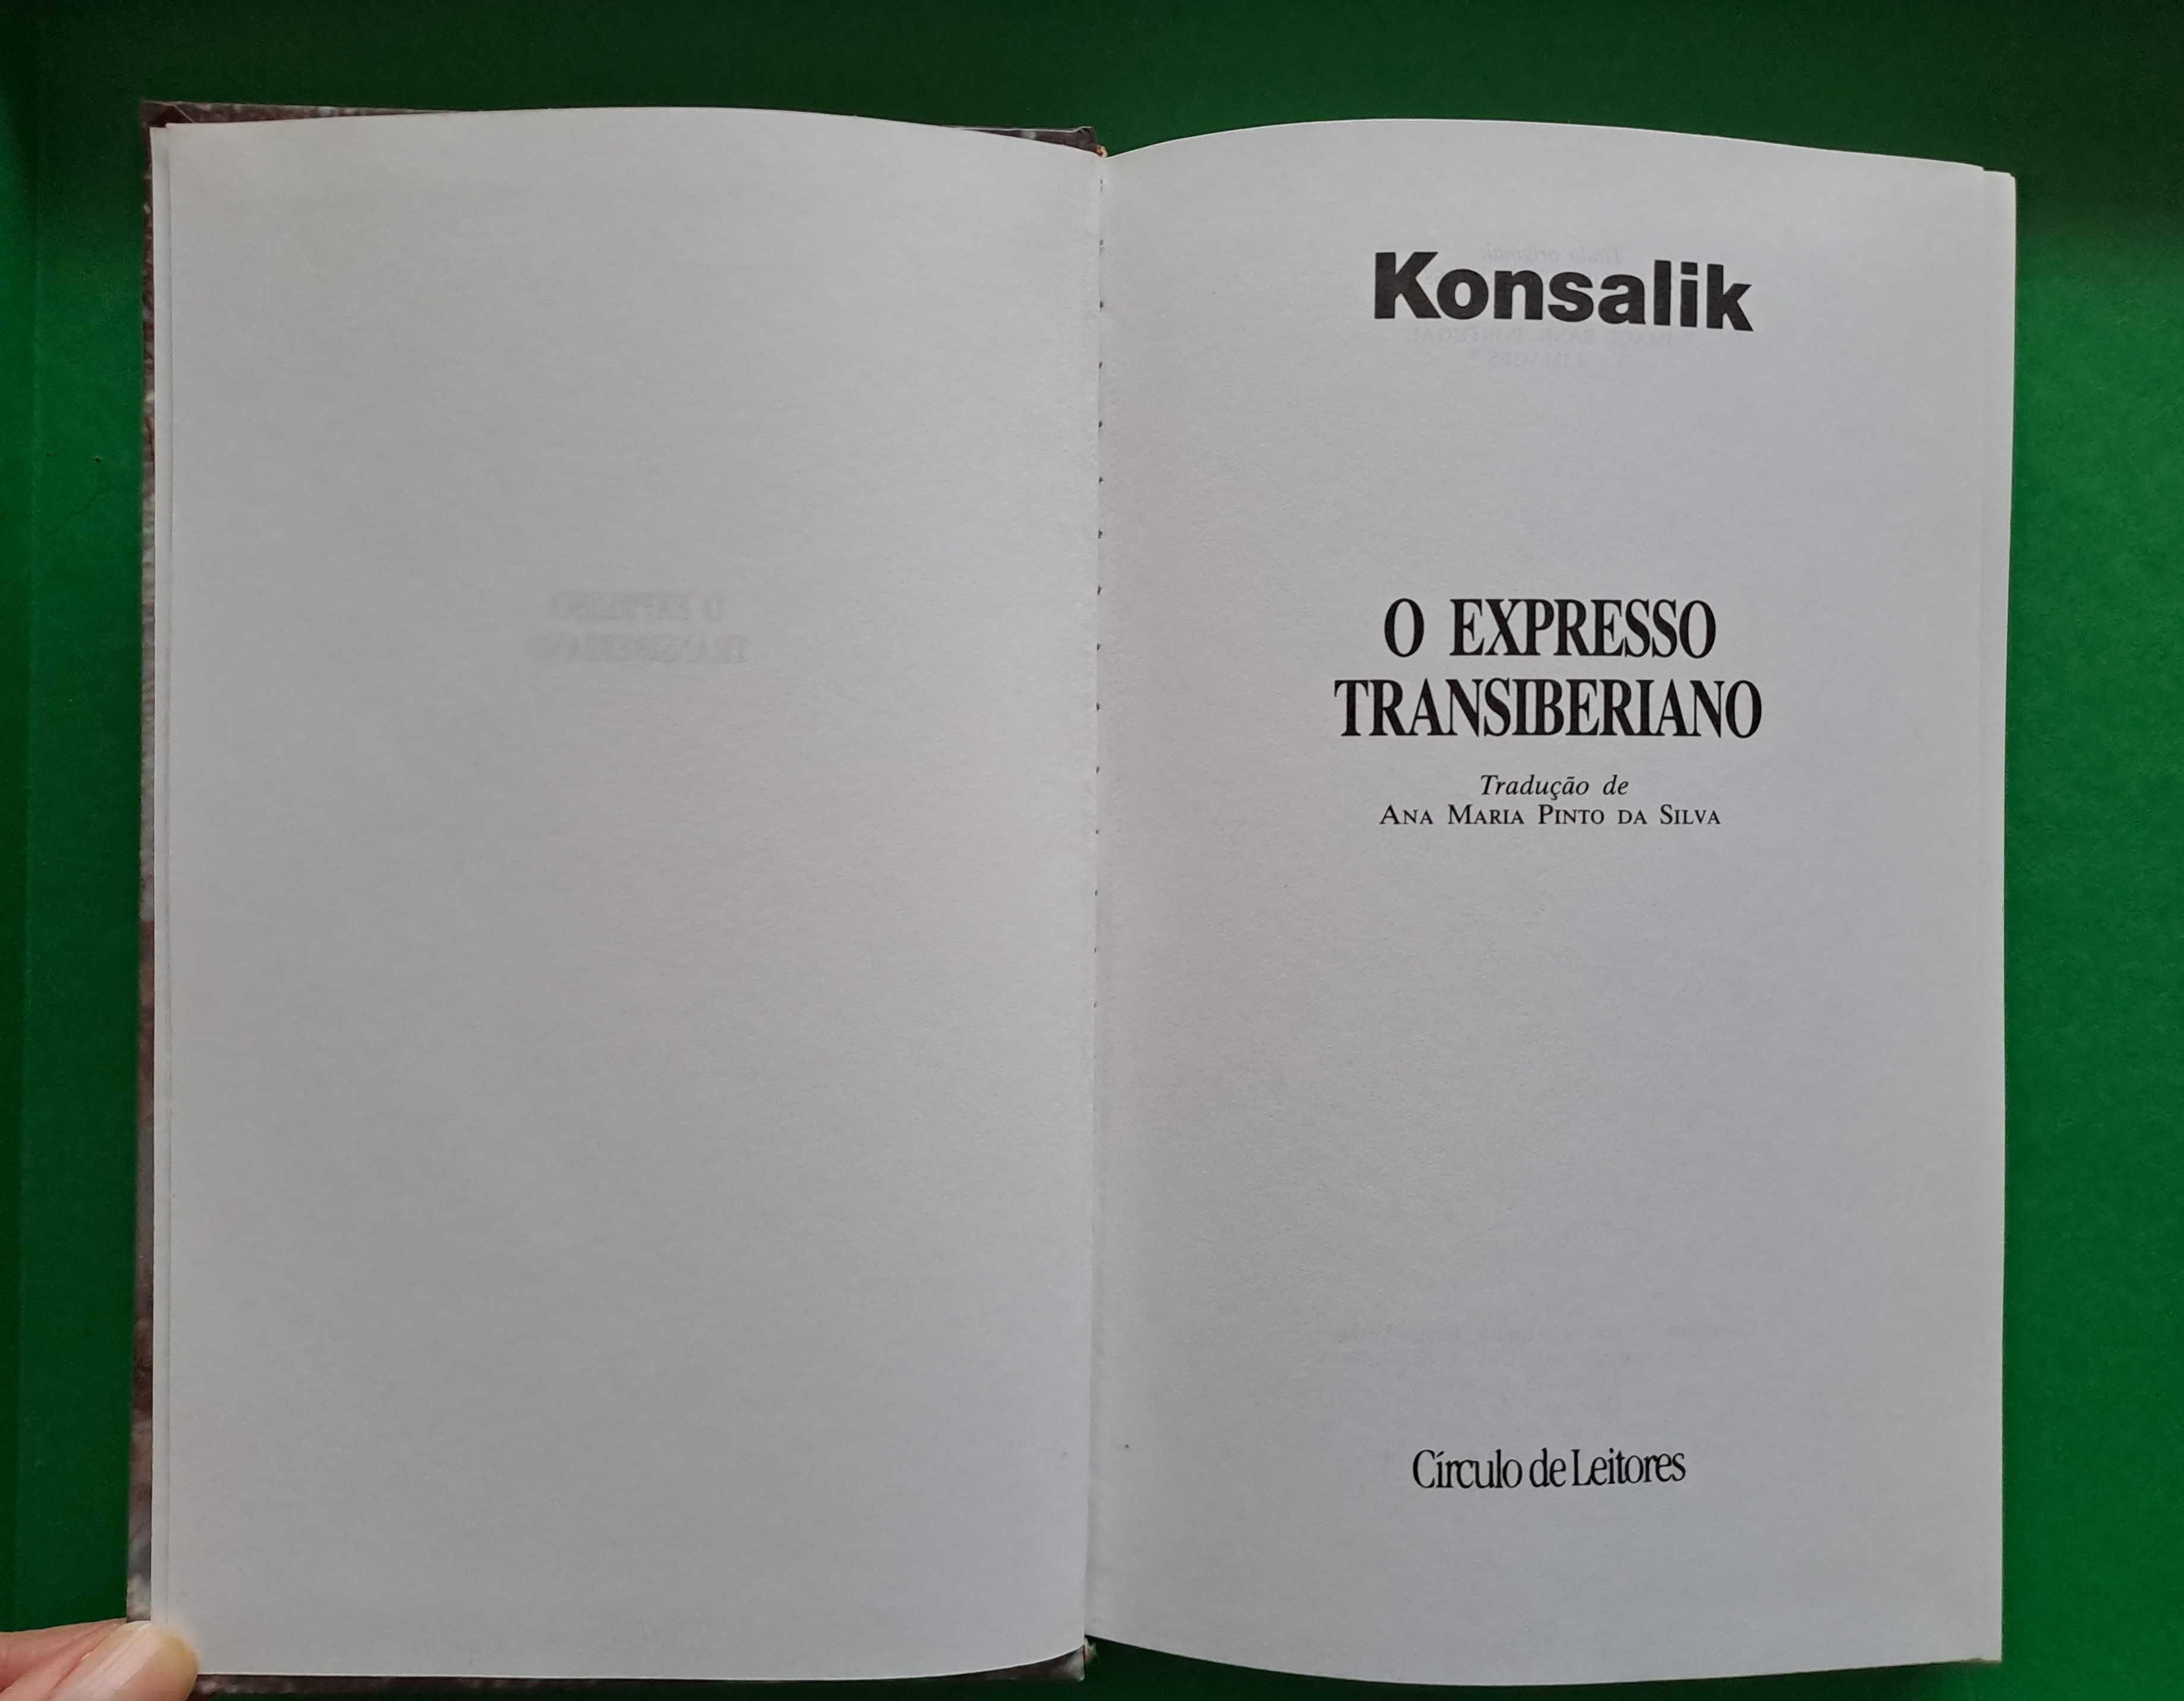 O Expresso Transiberiano de Konsalik